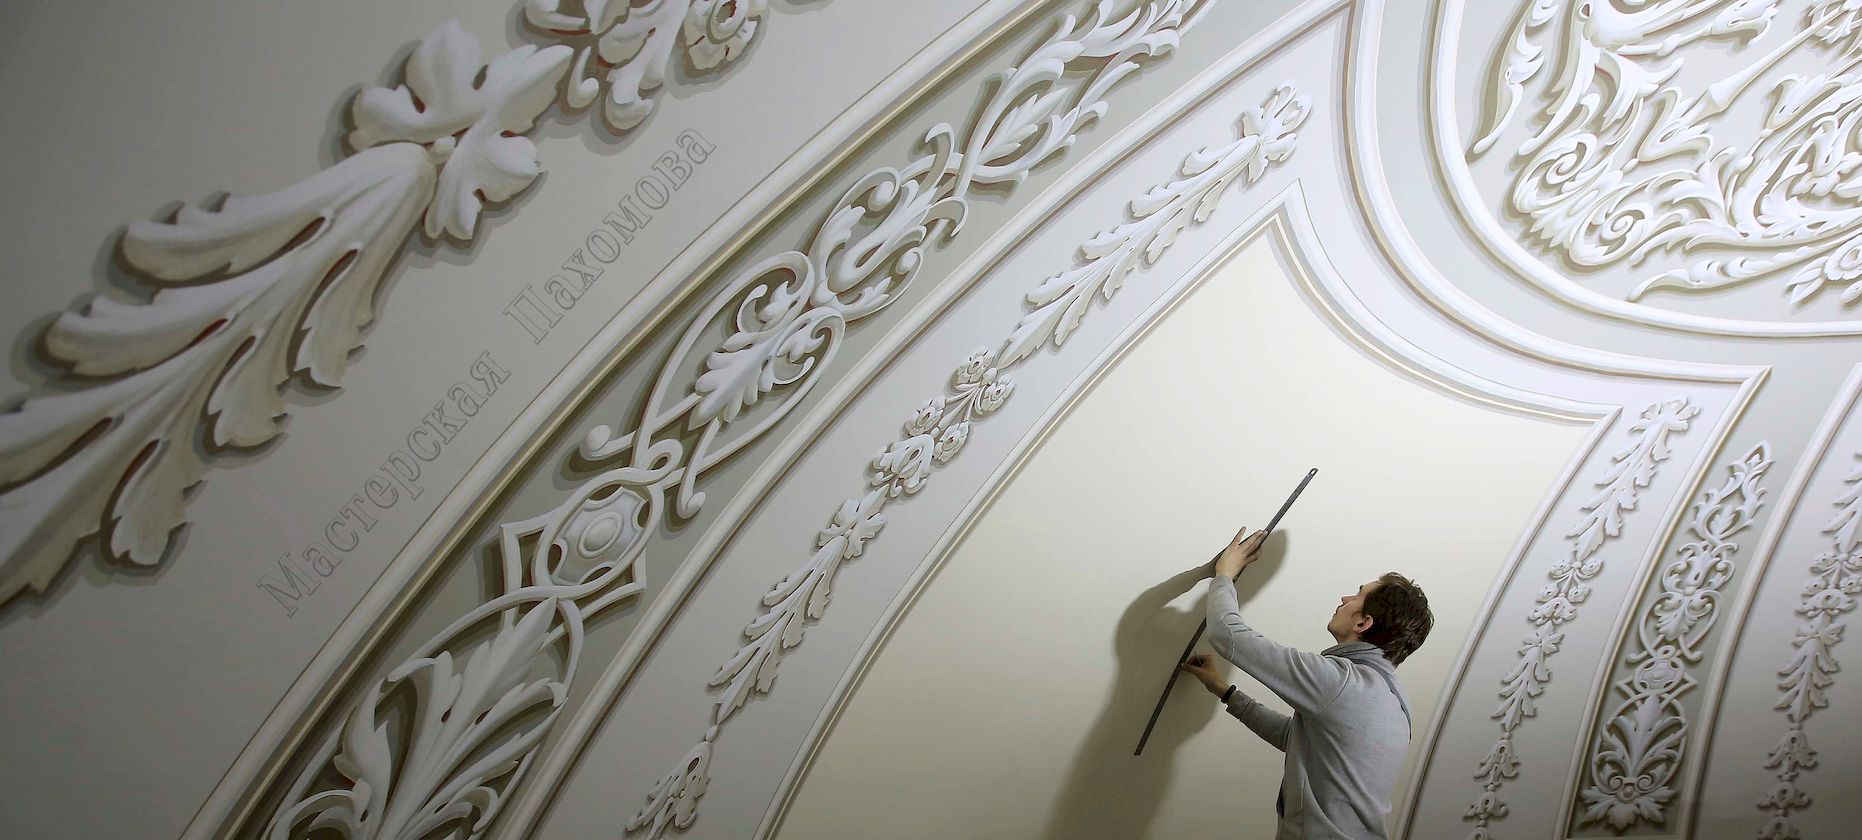 Альфрейная живопись центрального купола в Казанском соборе